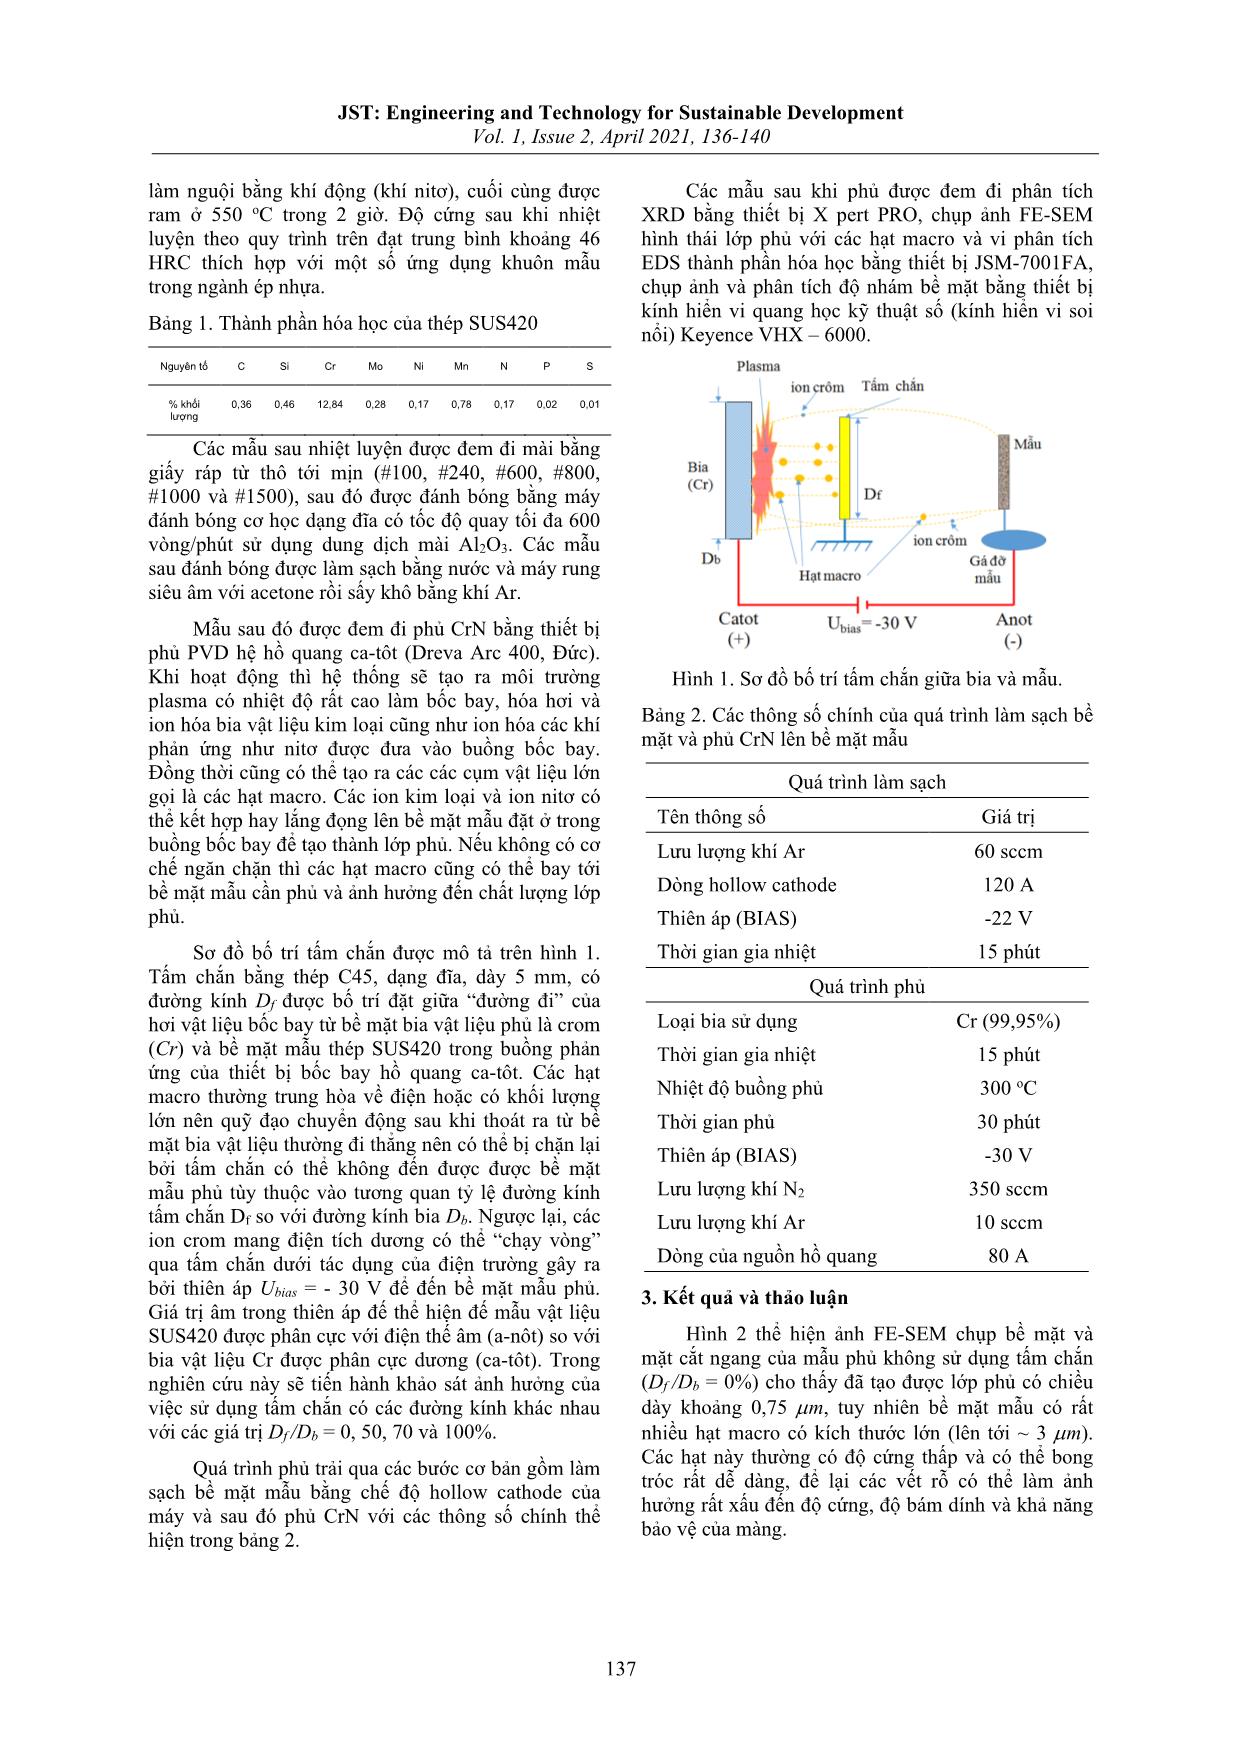 Ảnh hưởng của tấm chắn hạt macro đến hình thái của lớp phủ CrN bằng phương pháp bốc bay hồ quang Ca-TôT trang 2